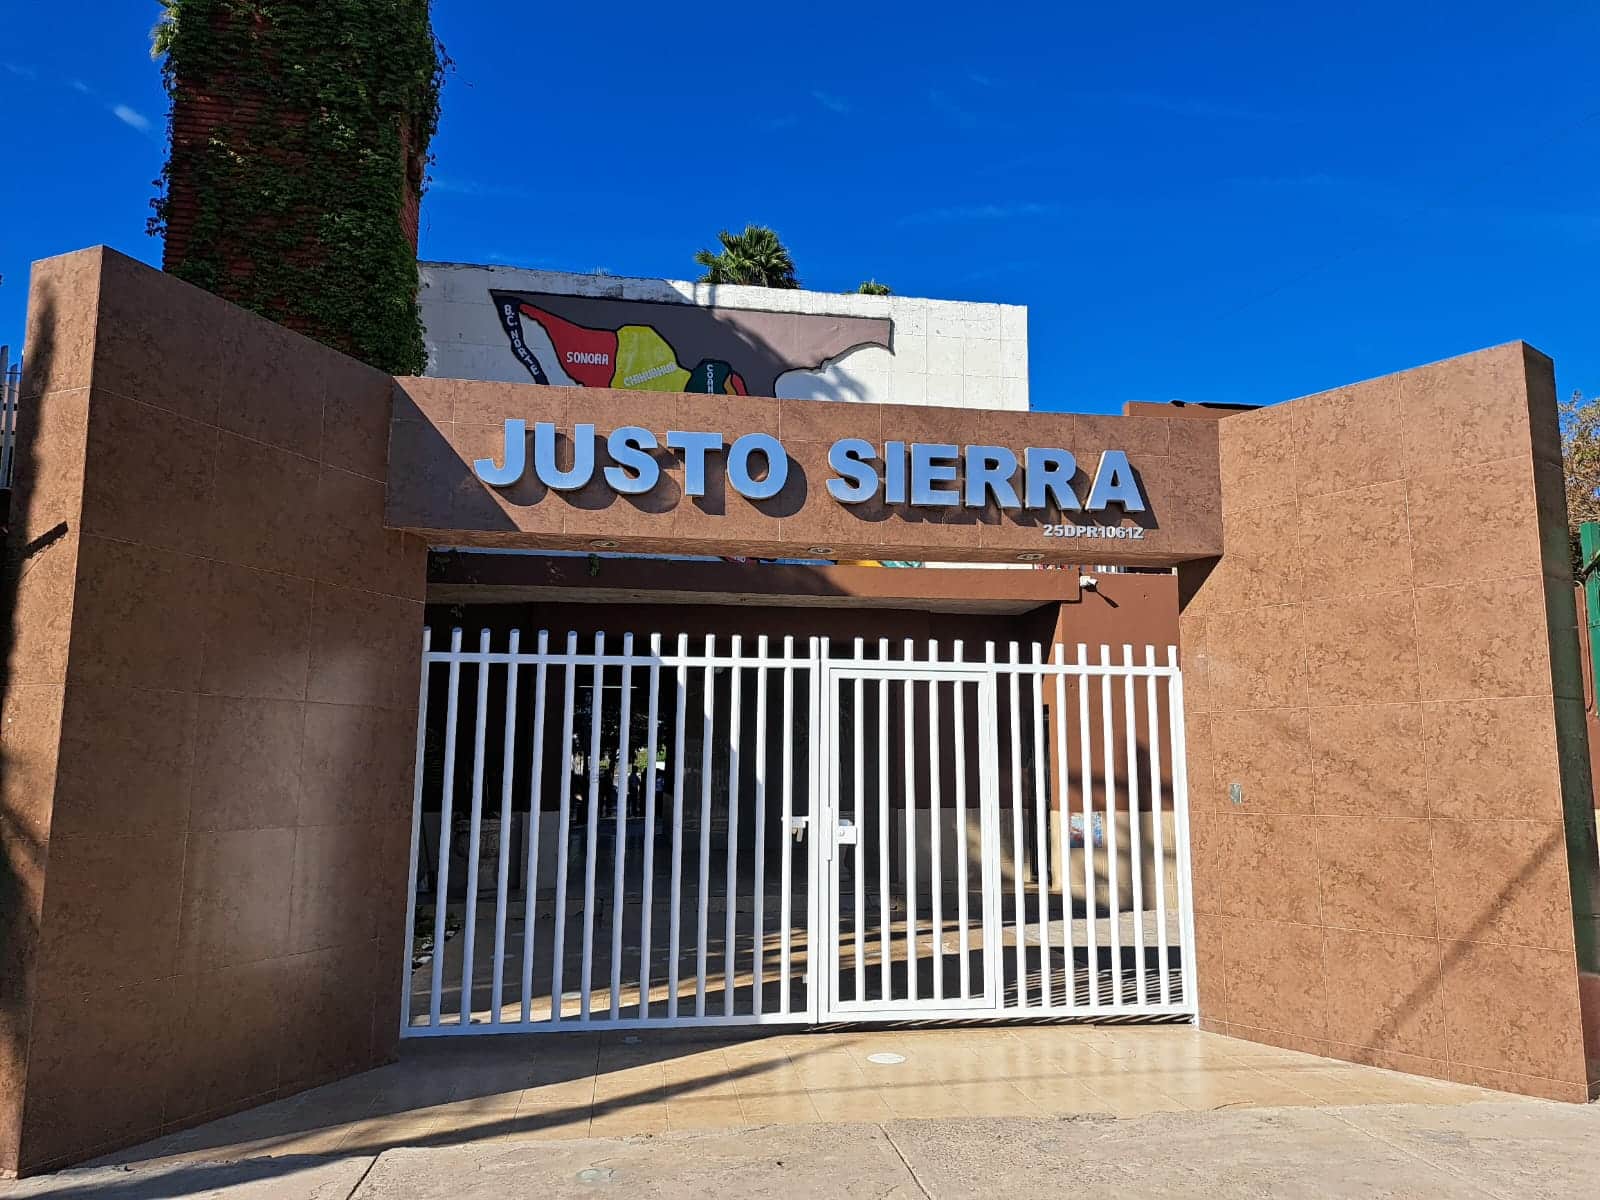 Escuela primaria “Justo Sierra